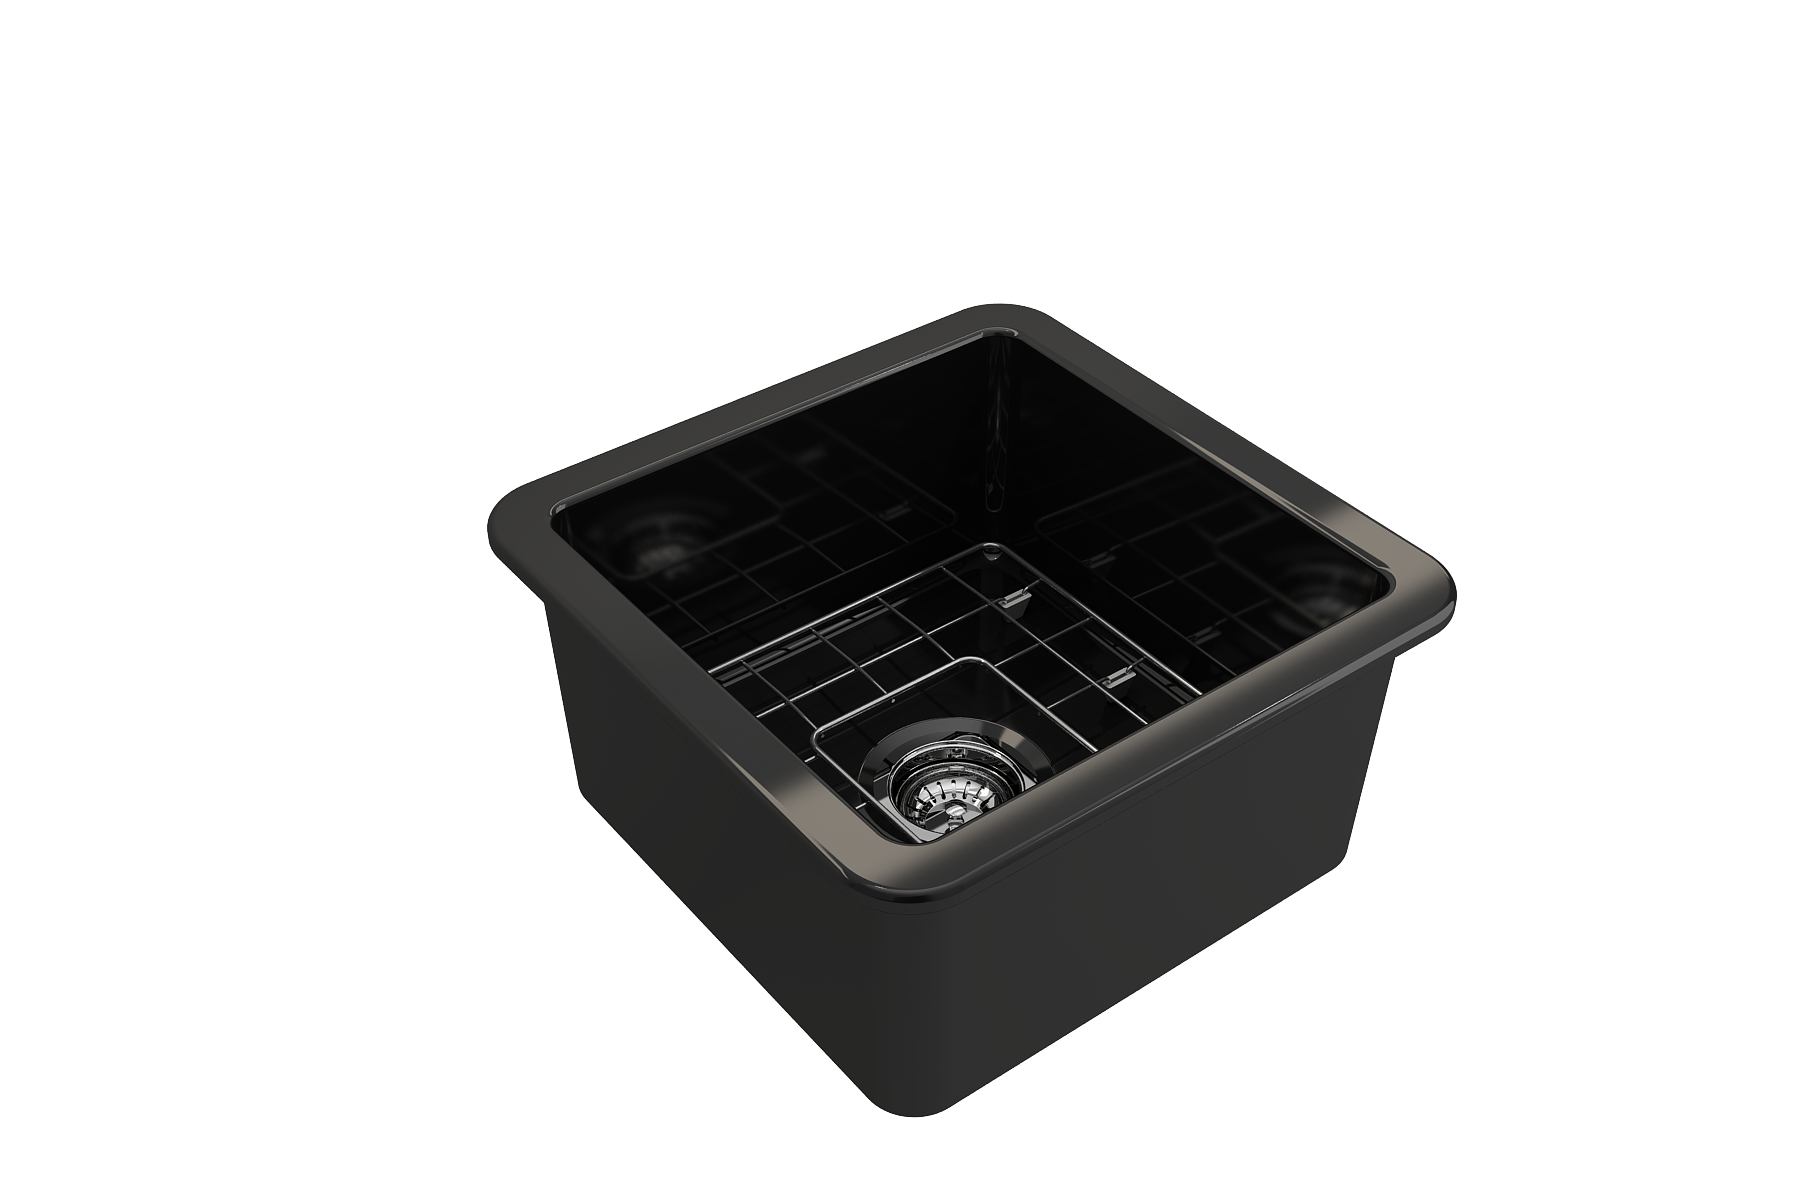 Bocchi Sotto 18" Fireclay Undermount or Drop-in Kitchen Prep Sink